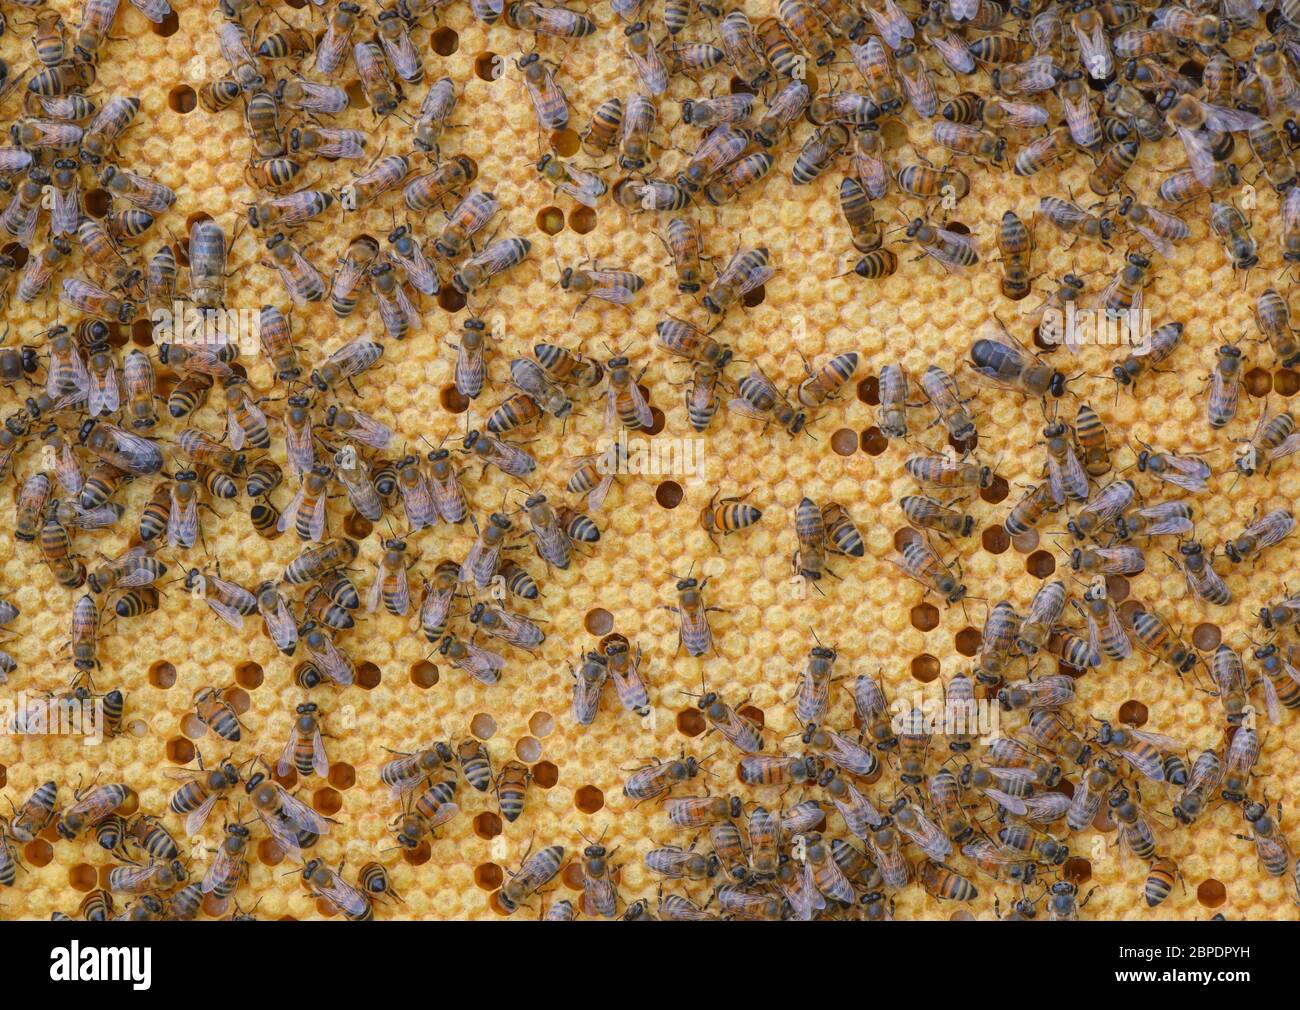 Briesen, Deutschland. Mai 2020. Bienen können auf einem Brutkamm gesehen werden. Der 20. Mai ist der Weltbienentag der Vereinten Nationen, daher unterstreicht die Weltgemeinschaft den dringenden Schutz der Bienen. Die Bedeutung der Bienen als Bestäuber für die Biodiversität und Ernährungssicherheit ist für die Menschheit von grundlegender Bedeutung. Eine Bienenkolonie besteht aus einer Königin, mehreren hundert Drohnen und 30,000 bis 60,000 Arbeiterbienen - im Sommer bis 120,000. Quelle: Patrick Pleul/dpa-Zentralbild/ZB/dpa/Alamy Live News Stockfoto